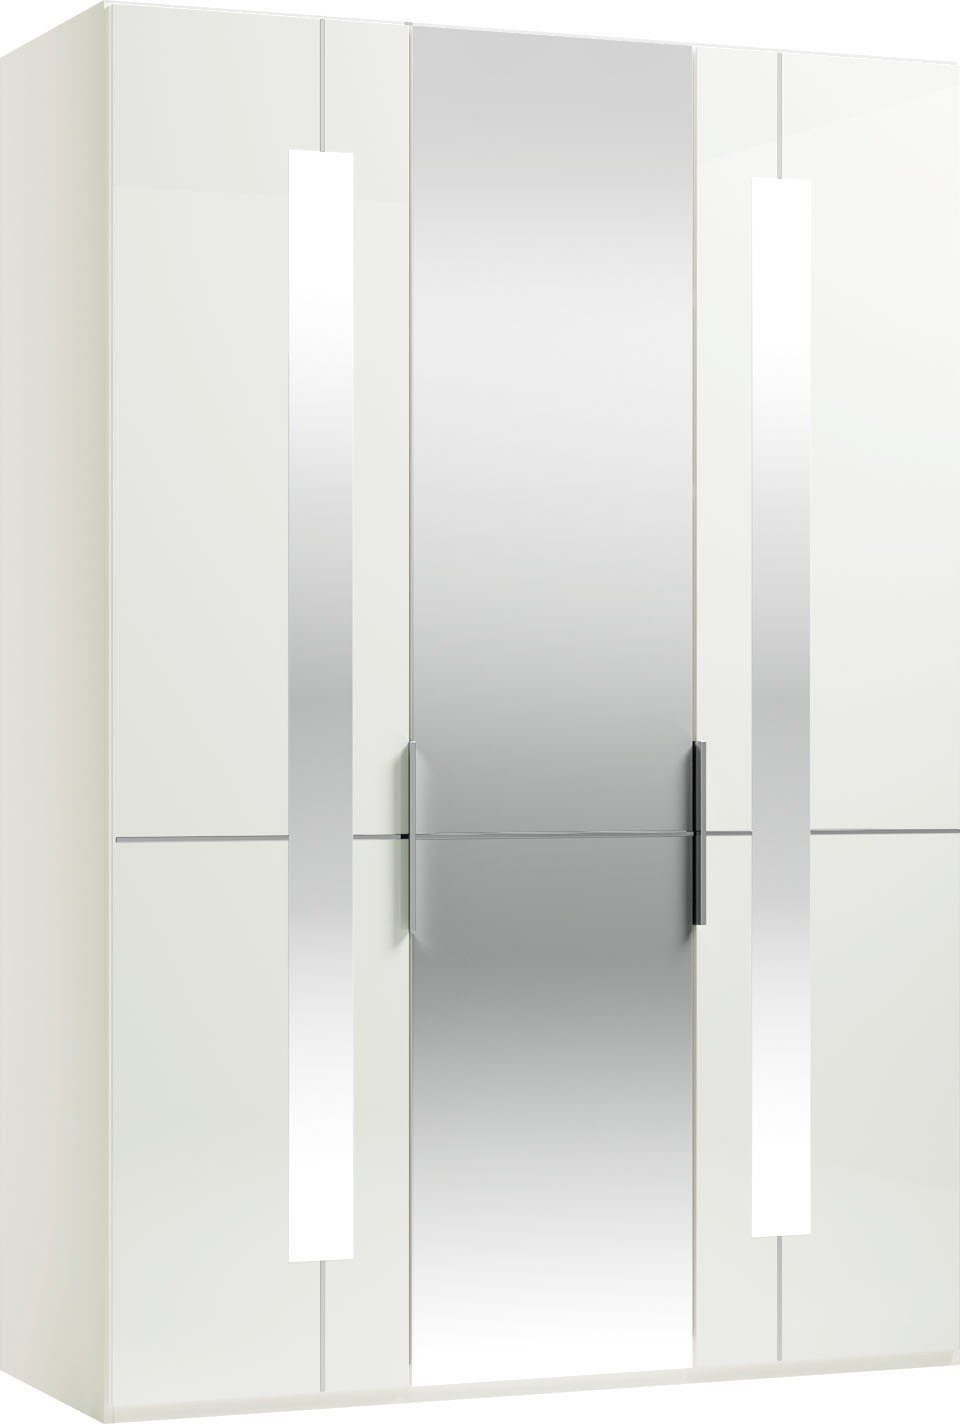 GALLERY Spiegeltüren Imola Drehtürenschrank und W by M Weiß mit Einlegeböden Glas- und branded Kleiderstangen, inkl. Musterring